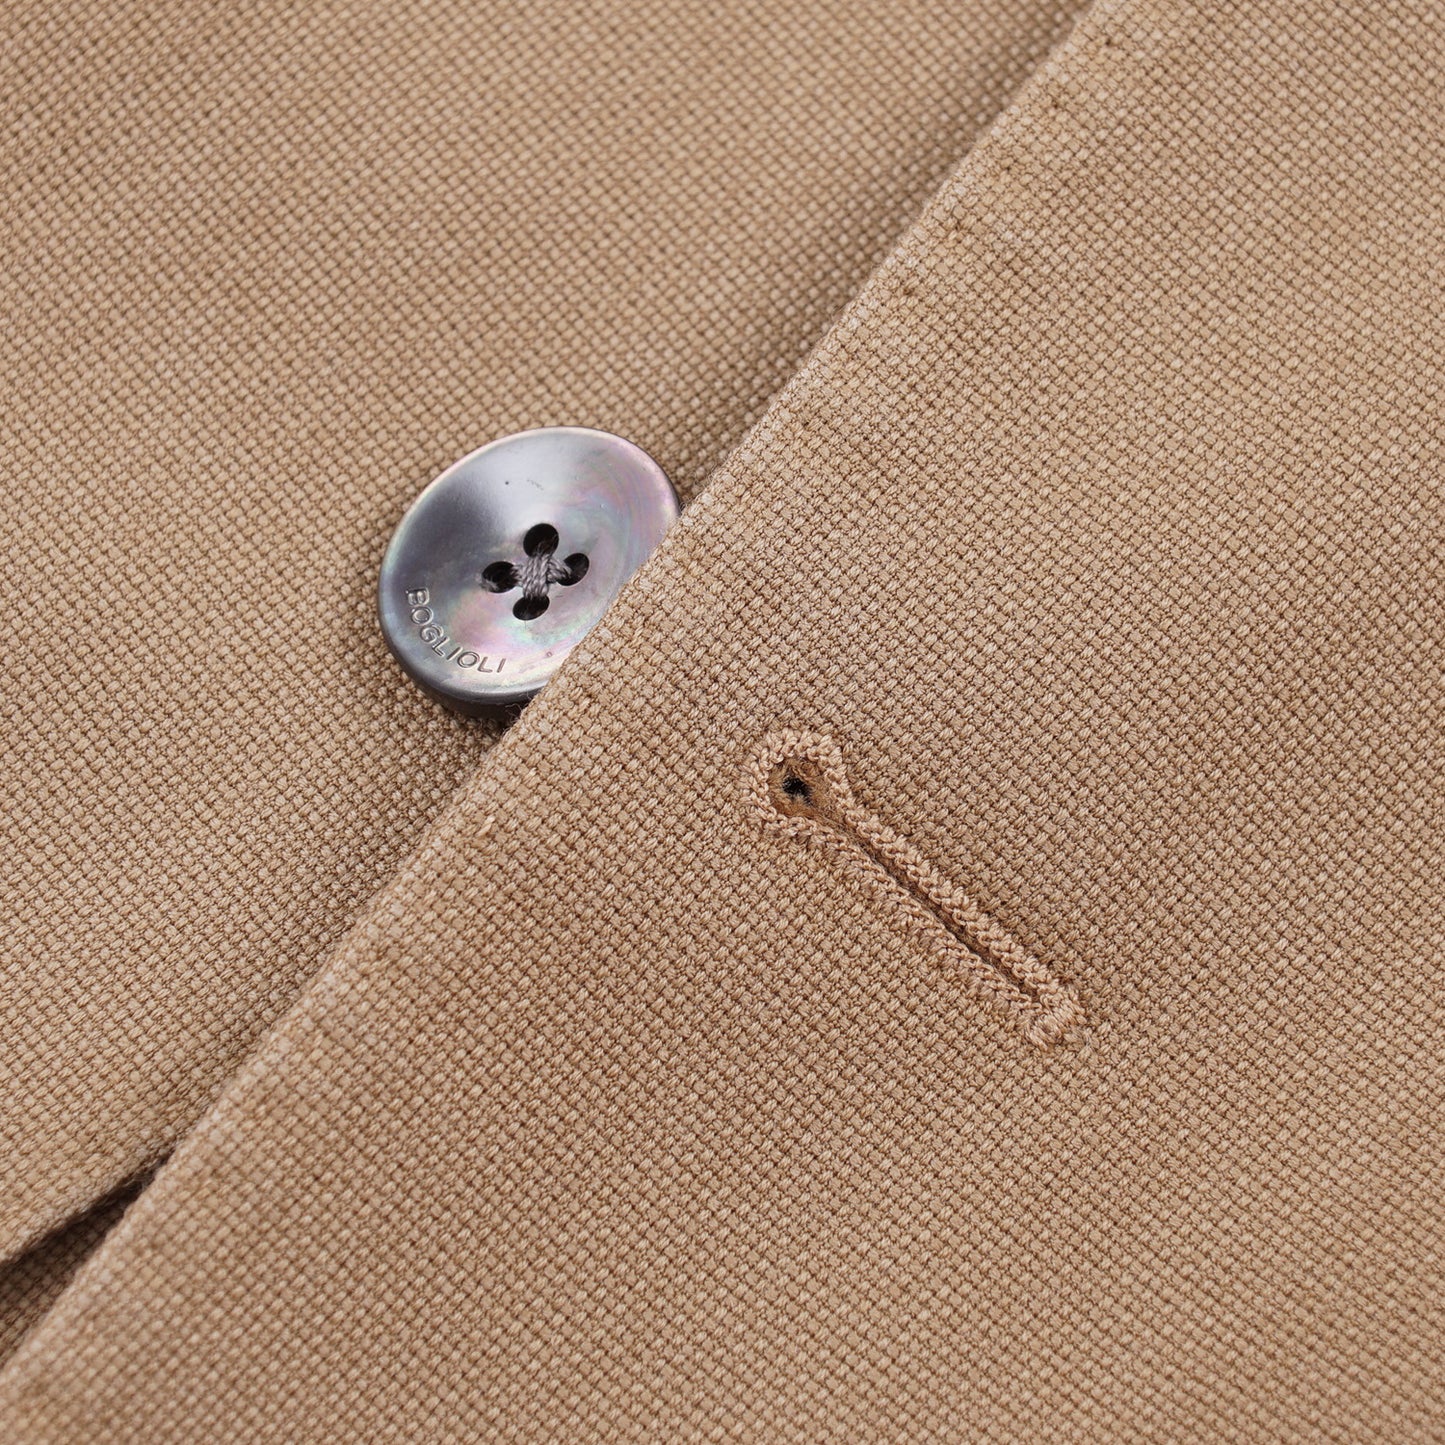 Boglioli Wool 'K Jacket' Sport Coat - Top Shelf Apparel